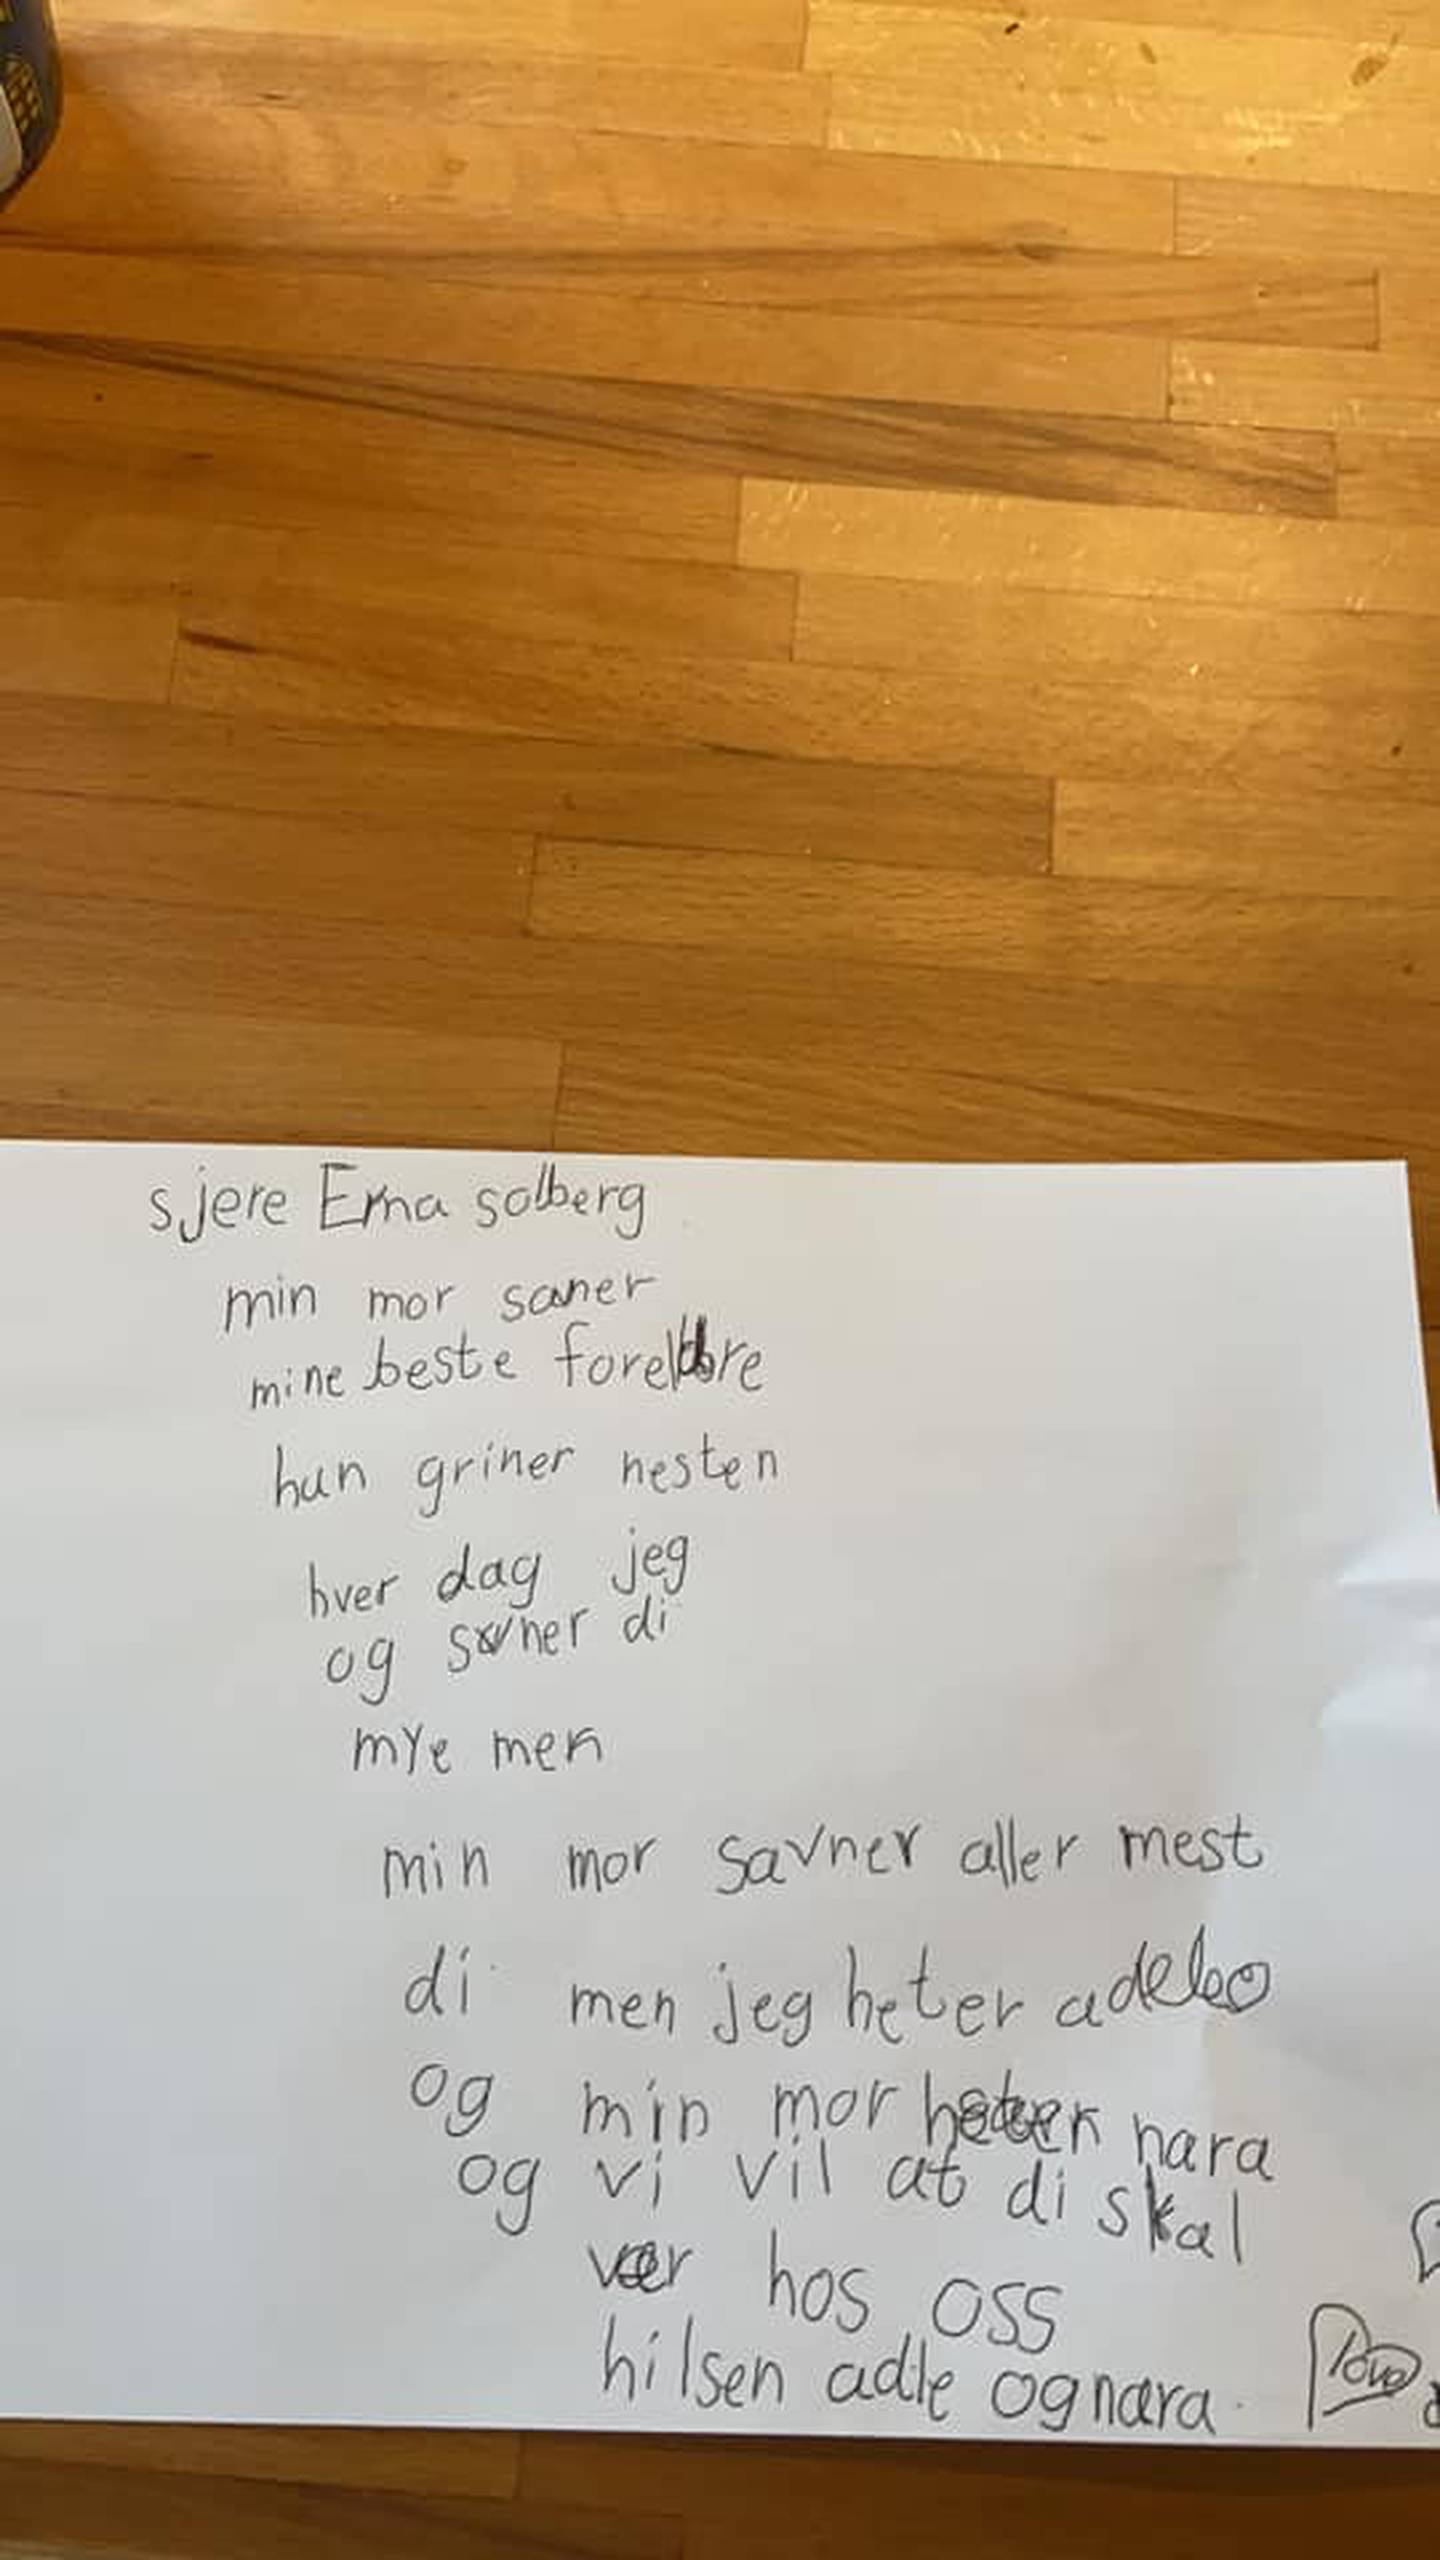 Brevet seks år gamle Adel fra Lura skrev til statsminister Erna Solberg.